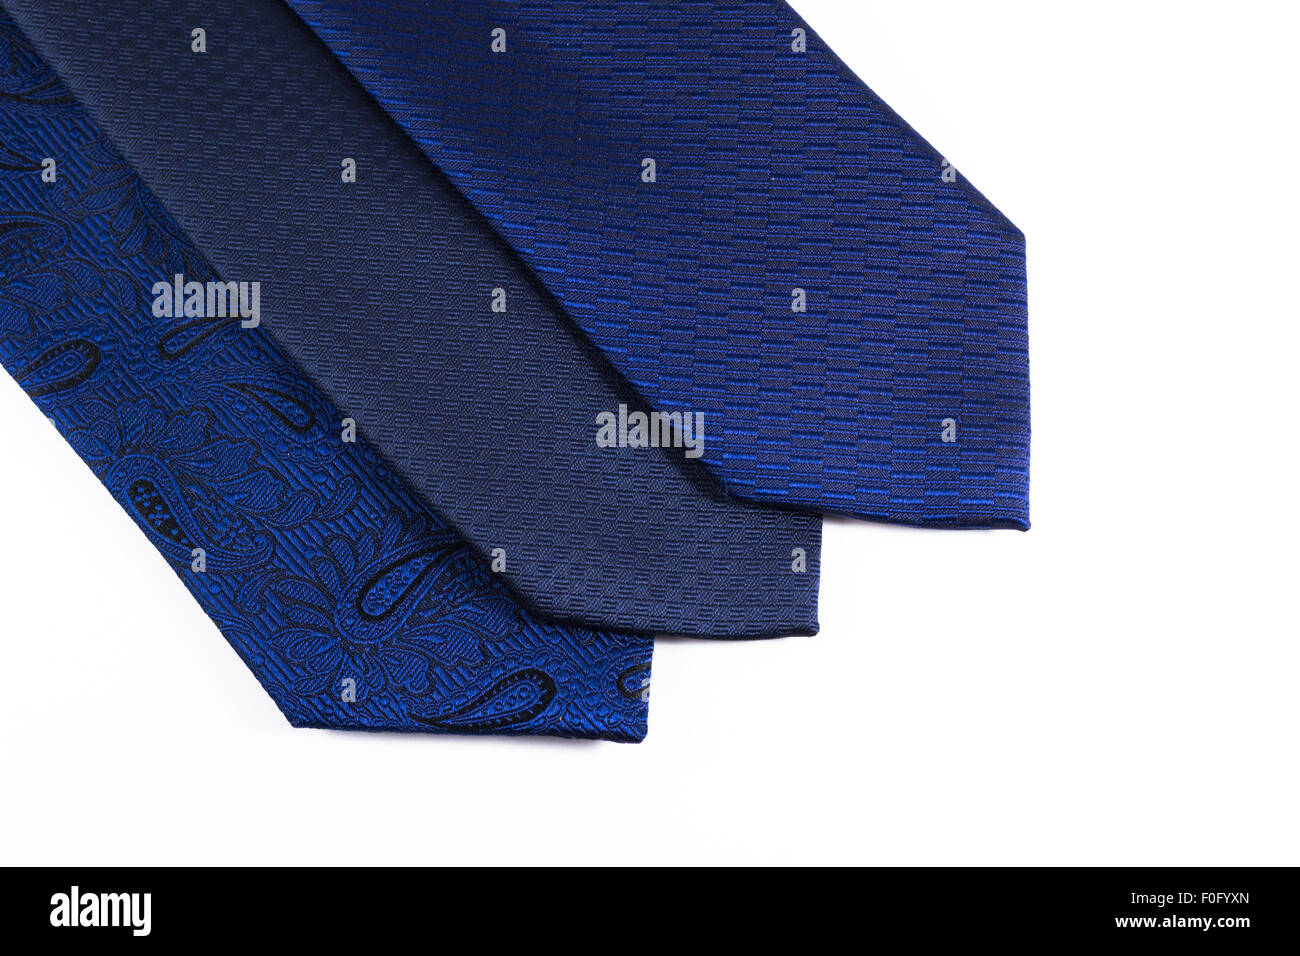 Drei blaue Krawatten aus Seide in einer Reihe, die Zugehörigkeit zu einem modernen Business-Mann auf einem weißen Hintergrund Stockfoto